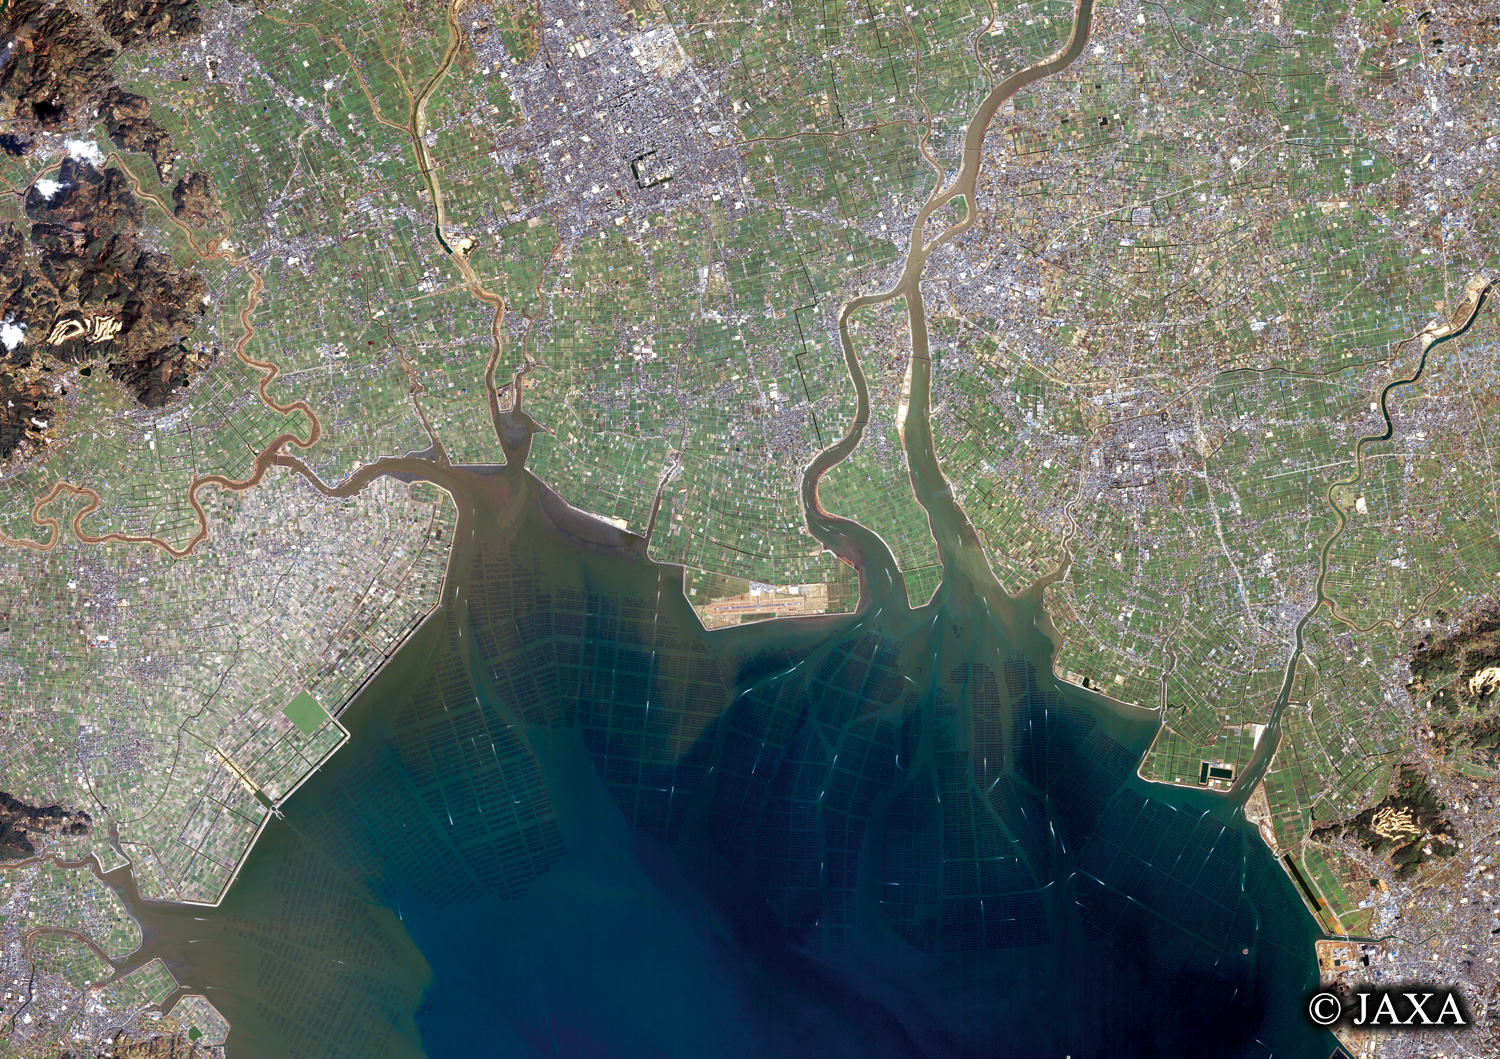 だいちから見た日本の都市 佐賀市周辺と有明海:衛星画像